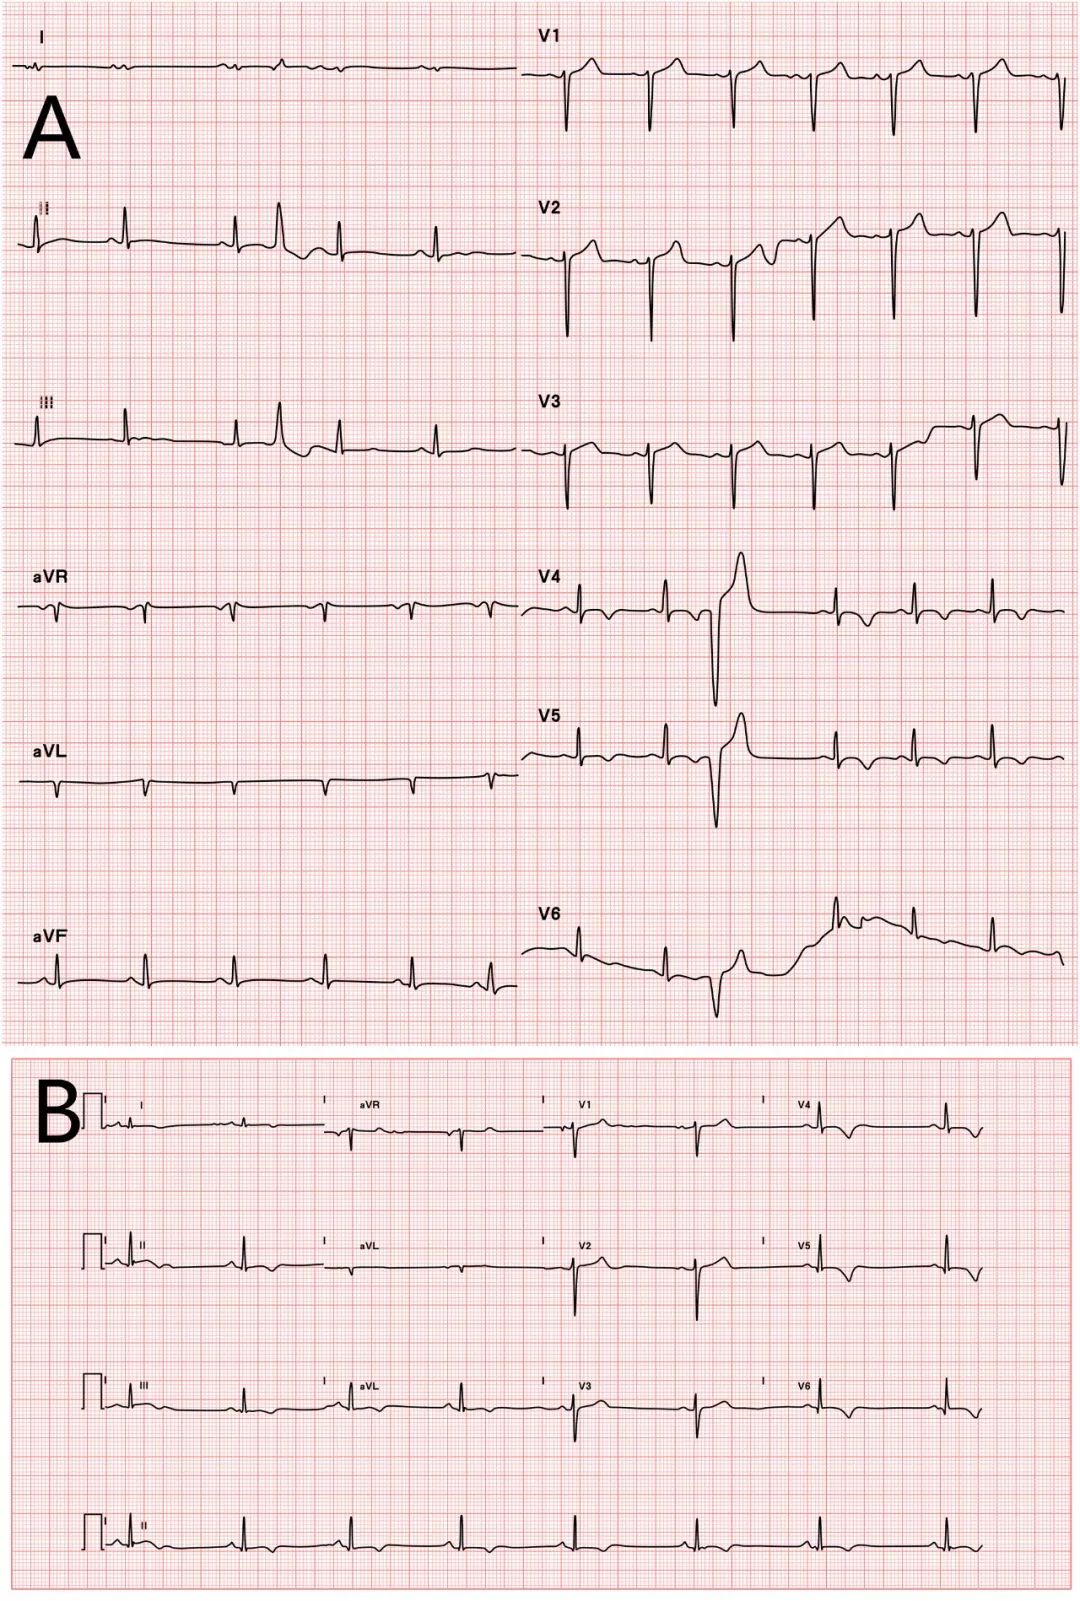 a:   患者1984年(26岁)心电图提示v4~v6导联和下壁导联t波倒置;   b